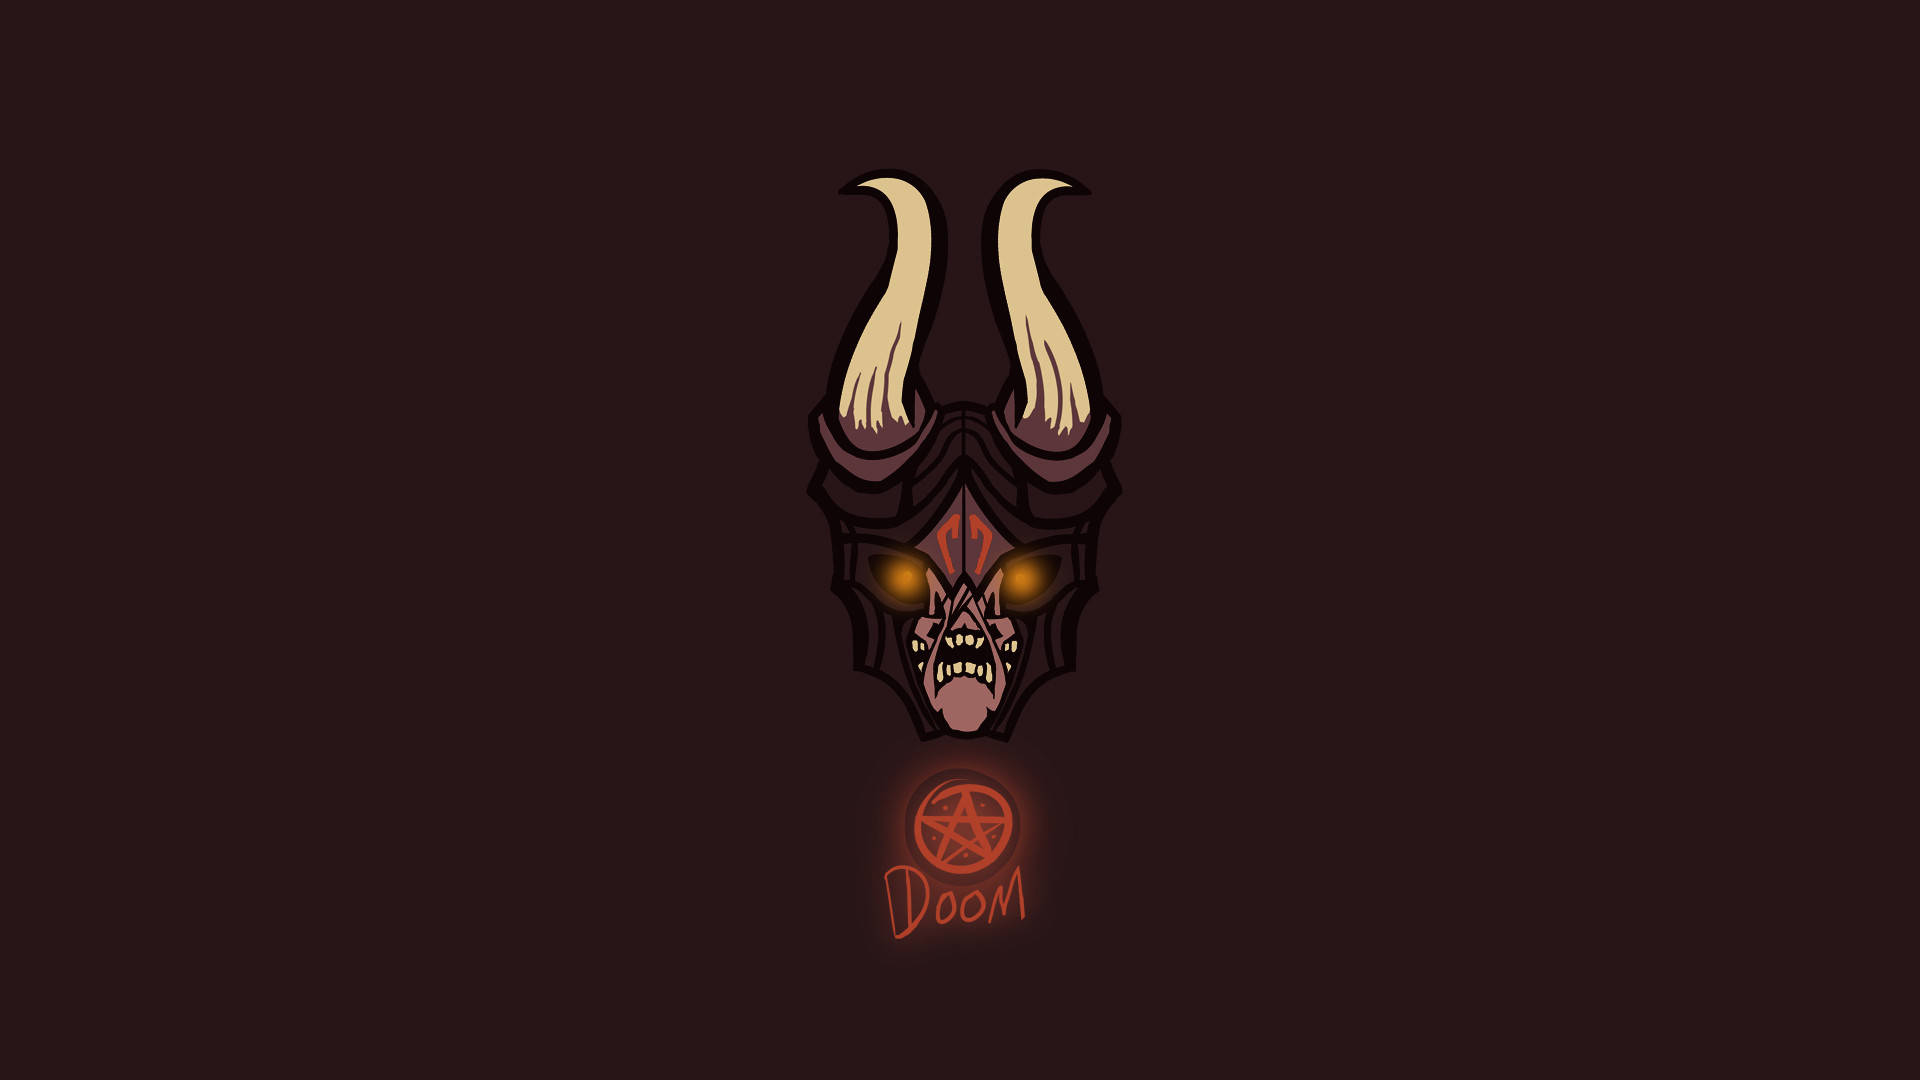 Doom Hd Demon Emperor Wallpaper